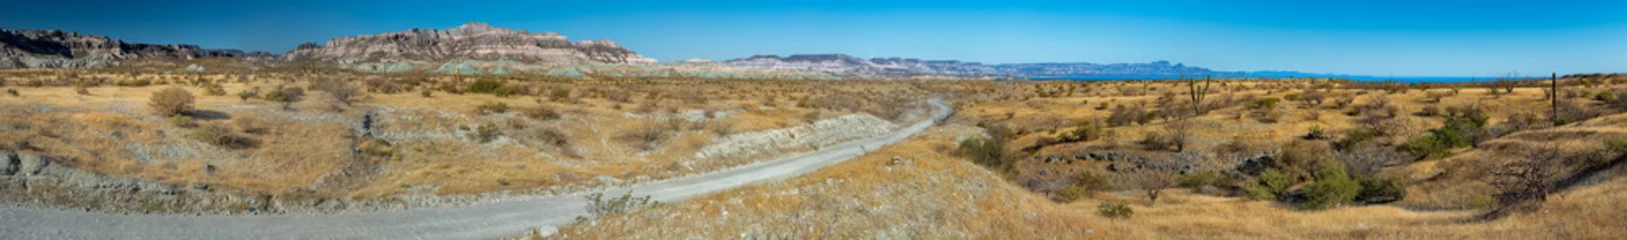 Cercles muraux Sécheresse basse californie paysage panorama désert route